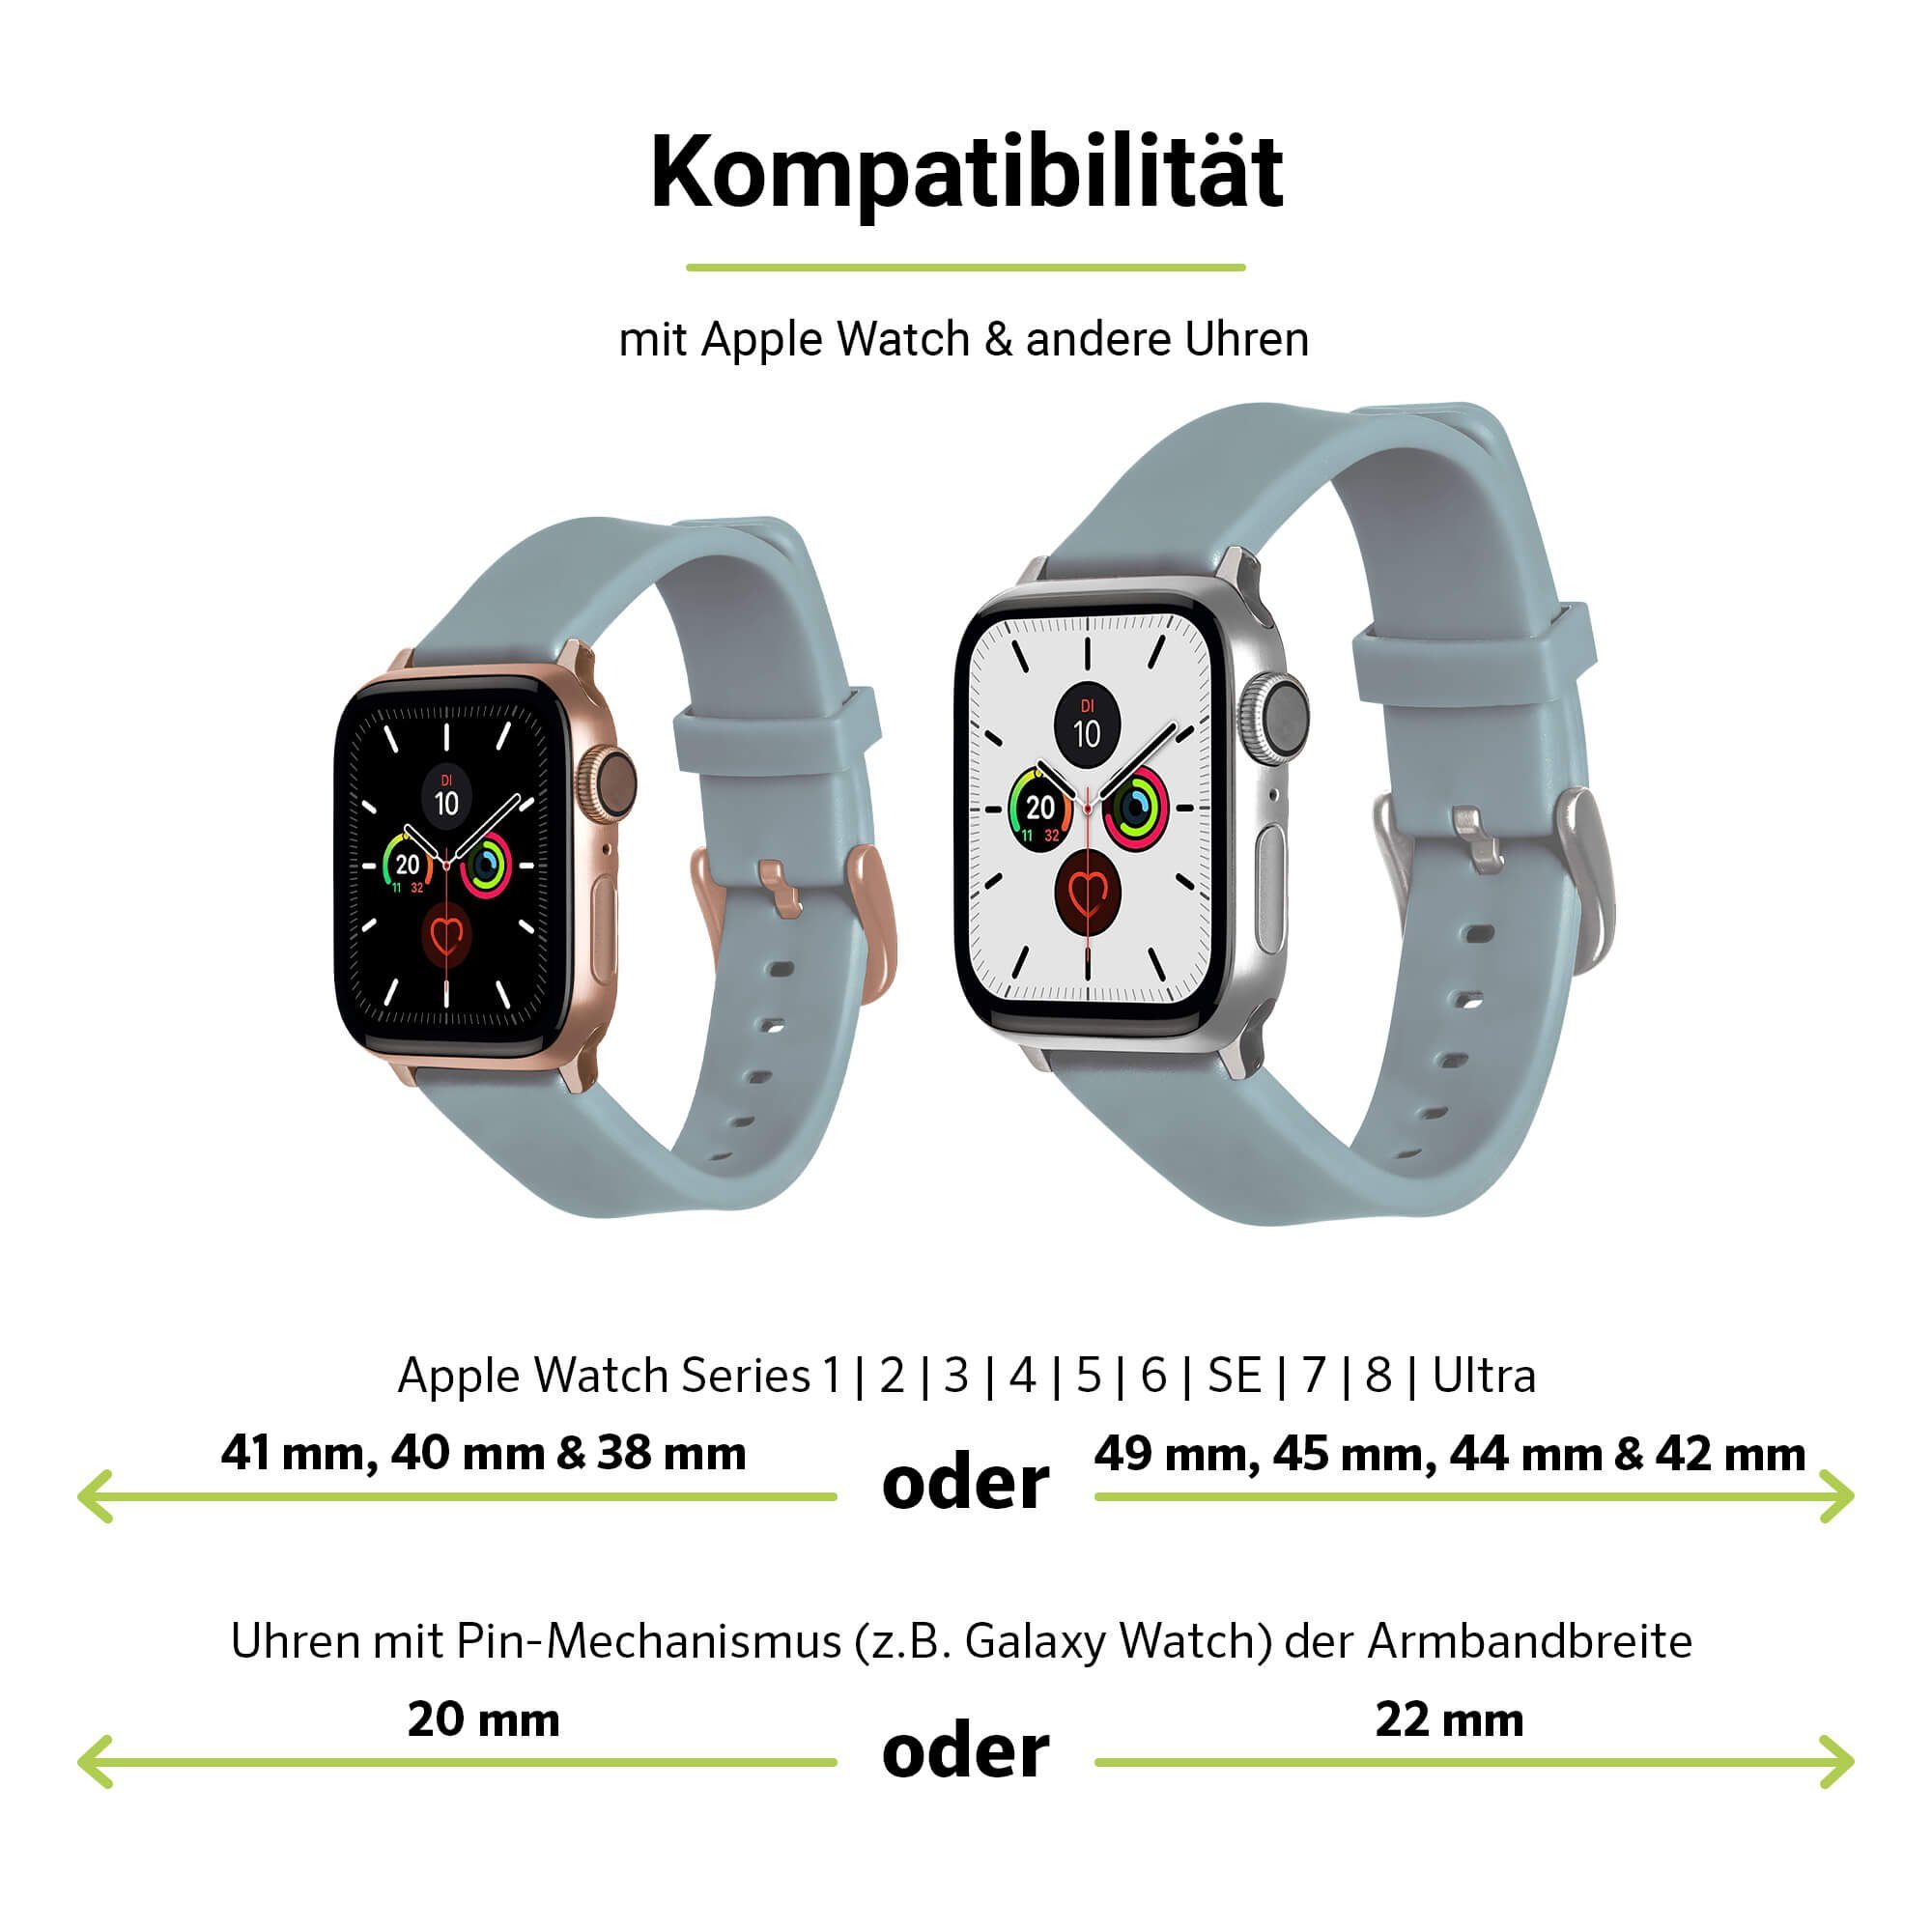 SE (41mm), Artwizz & WatchBand 3-1 Adapter, Smartwatch-Armband Hellgrau, Watch 6-4 Armband (38mm) mit (40mm), Silikon Apple Silicone, 9-7